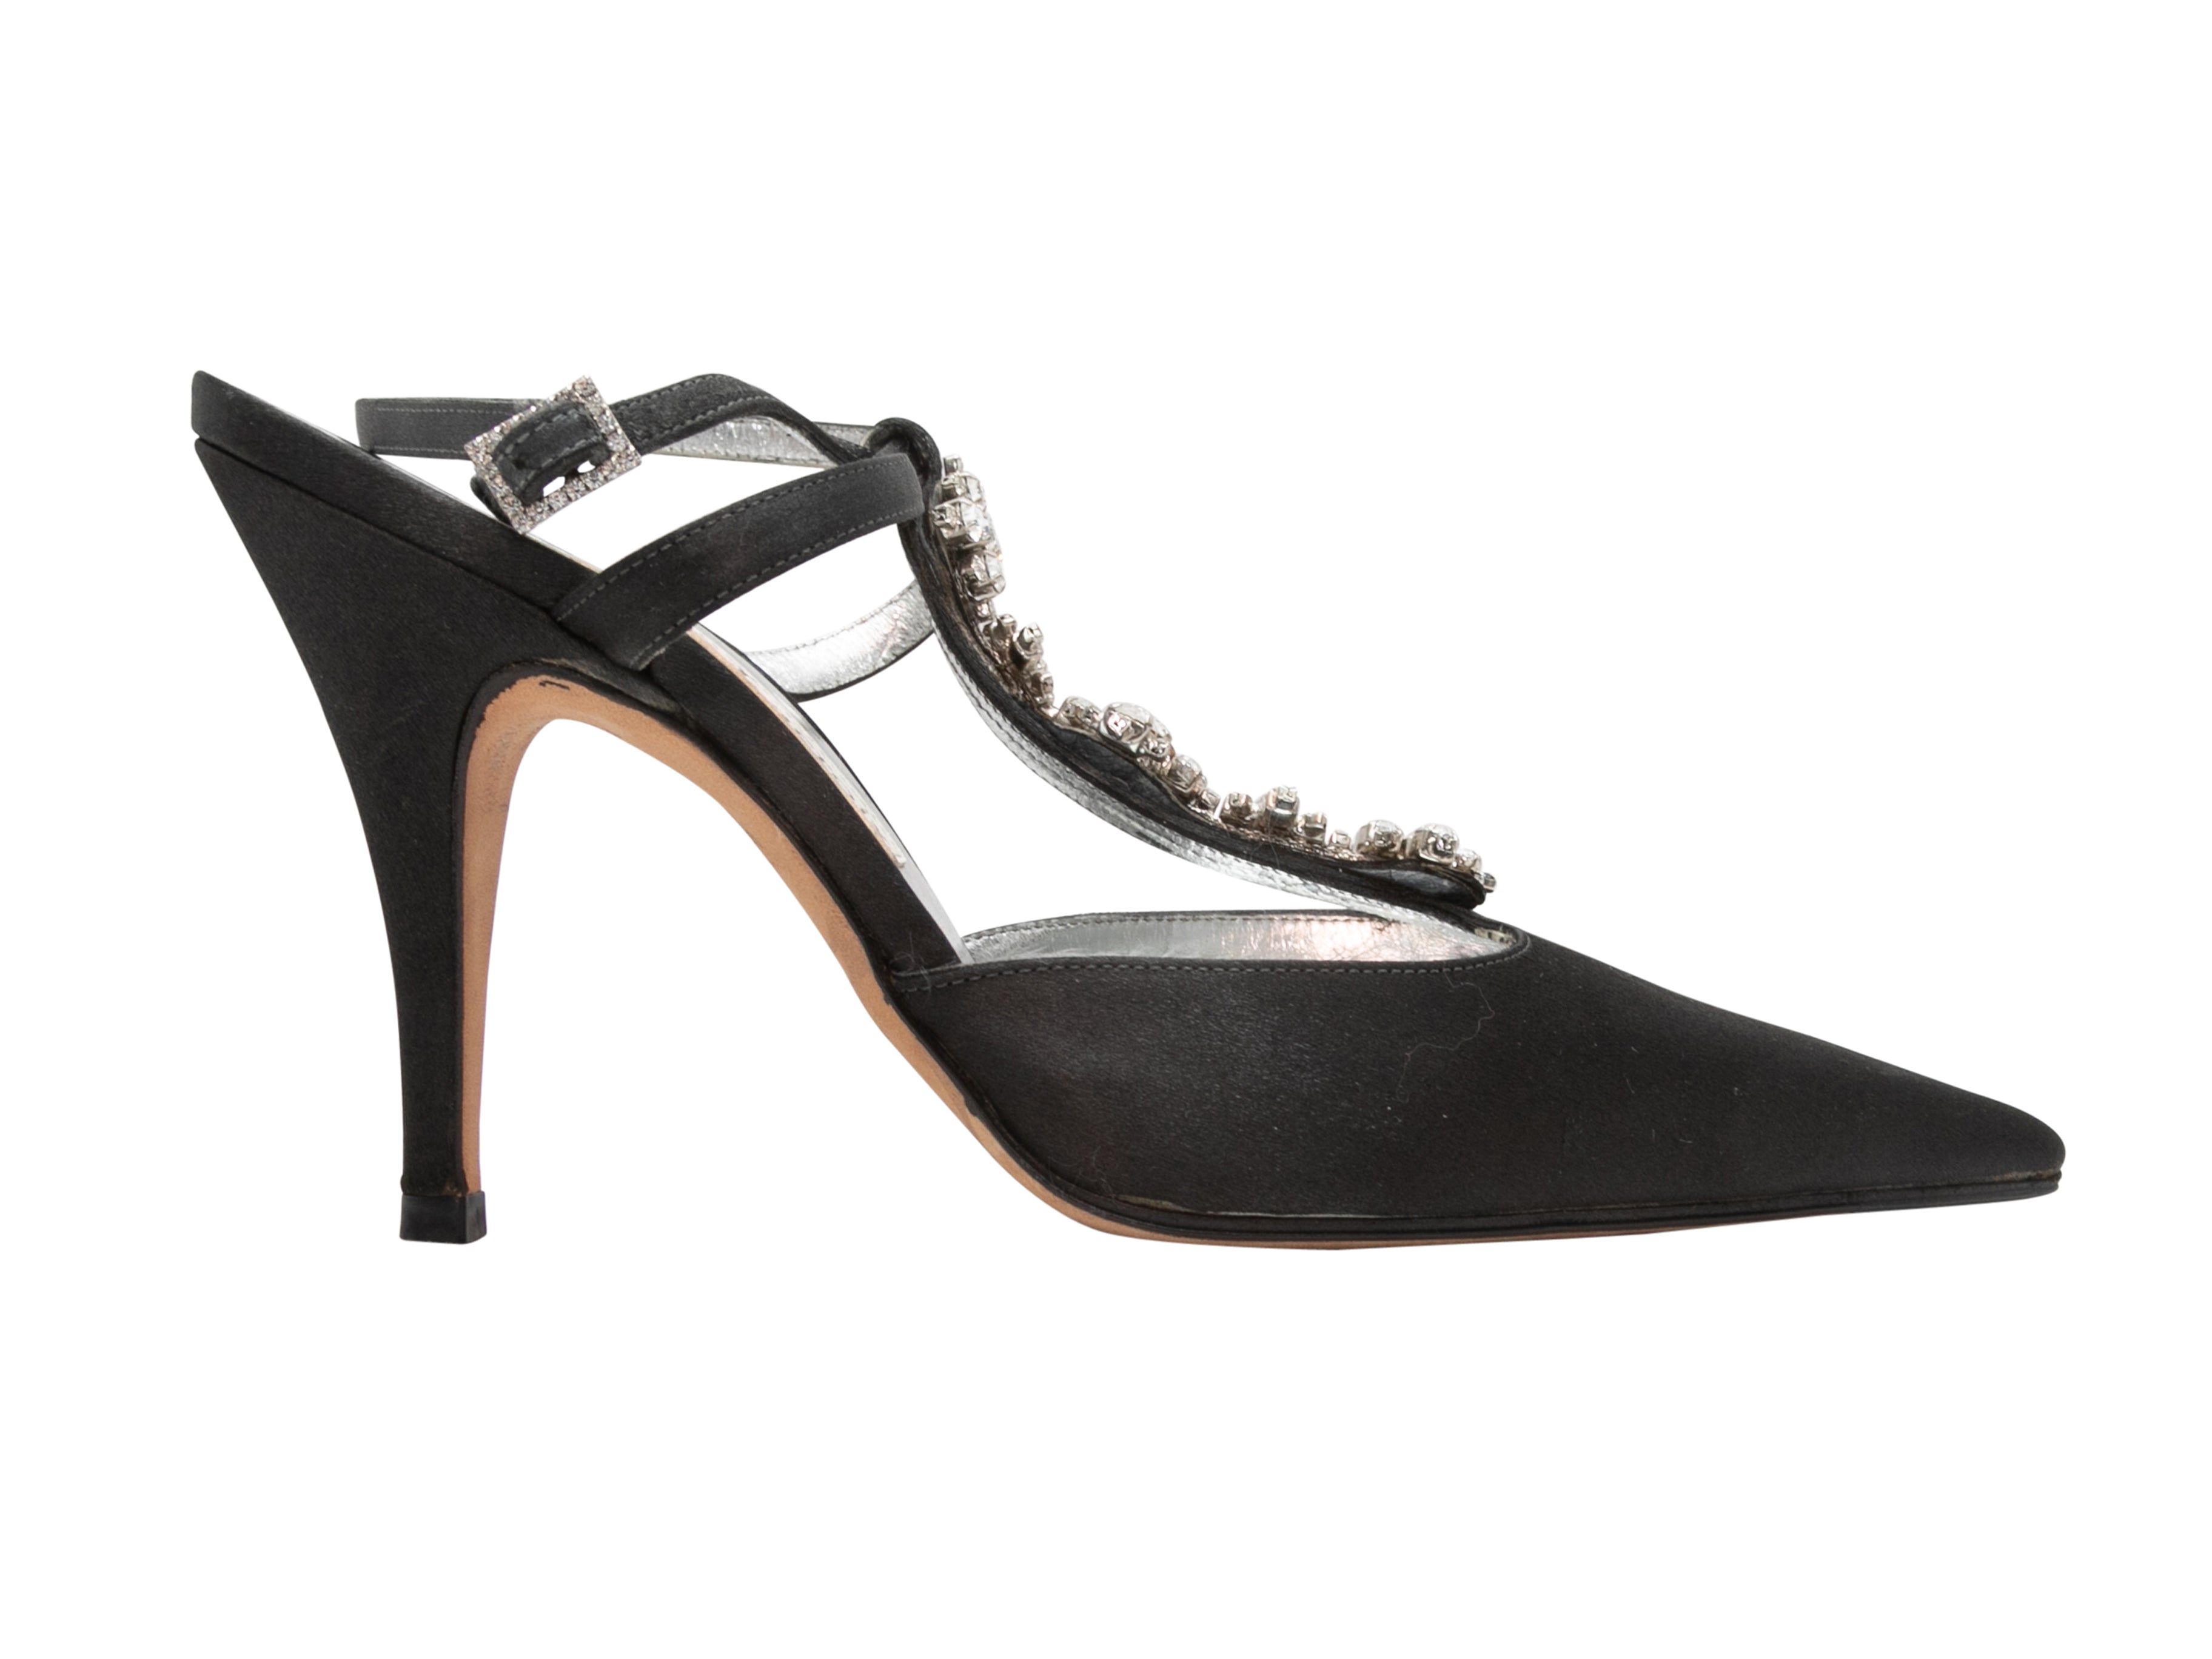 Vintage Black Christian Lacroix Silk Crystal-Embellished Heels Size 35 - Designer Revival